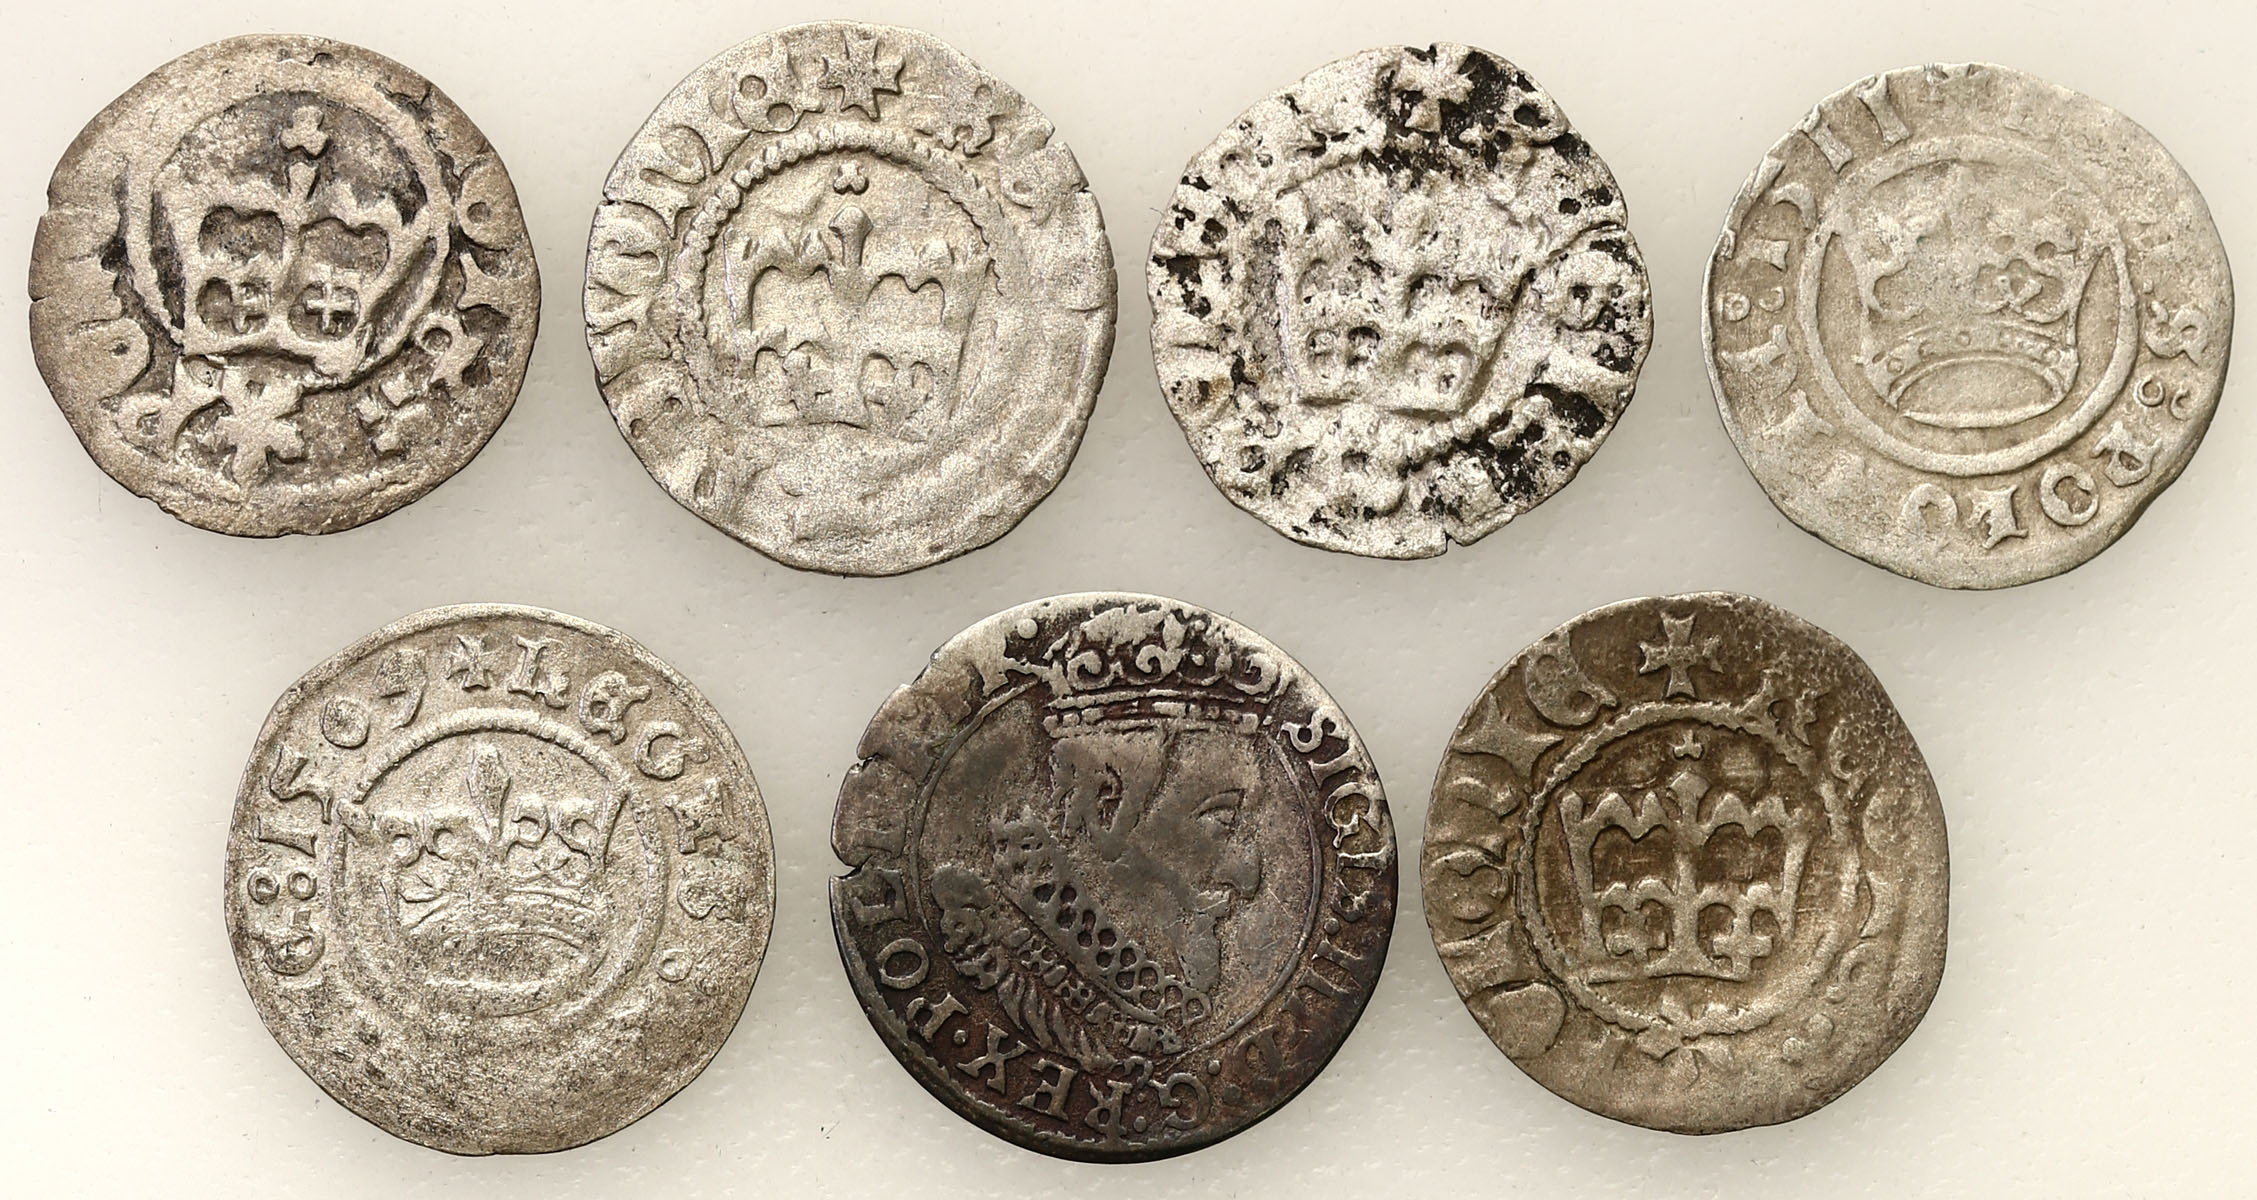 Polska XV-XVII wiek. Półgrosz - Kraków, grosz 1626 - Gdańsk, zestaw 7 monet